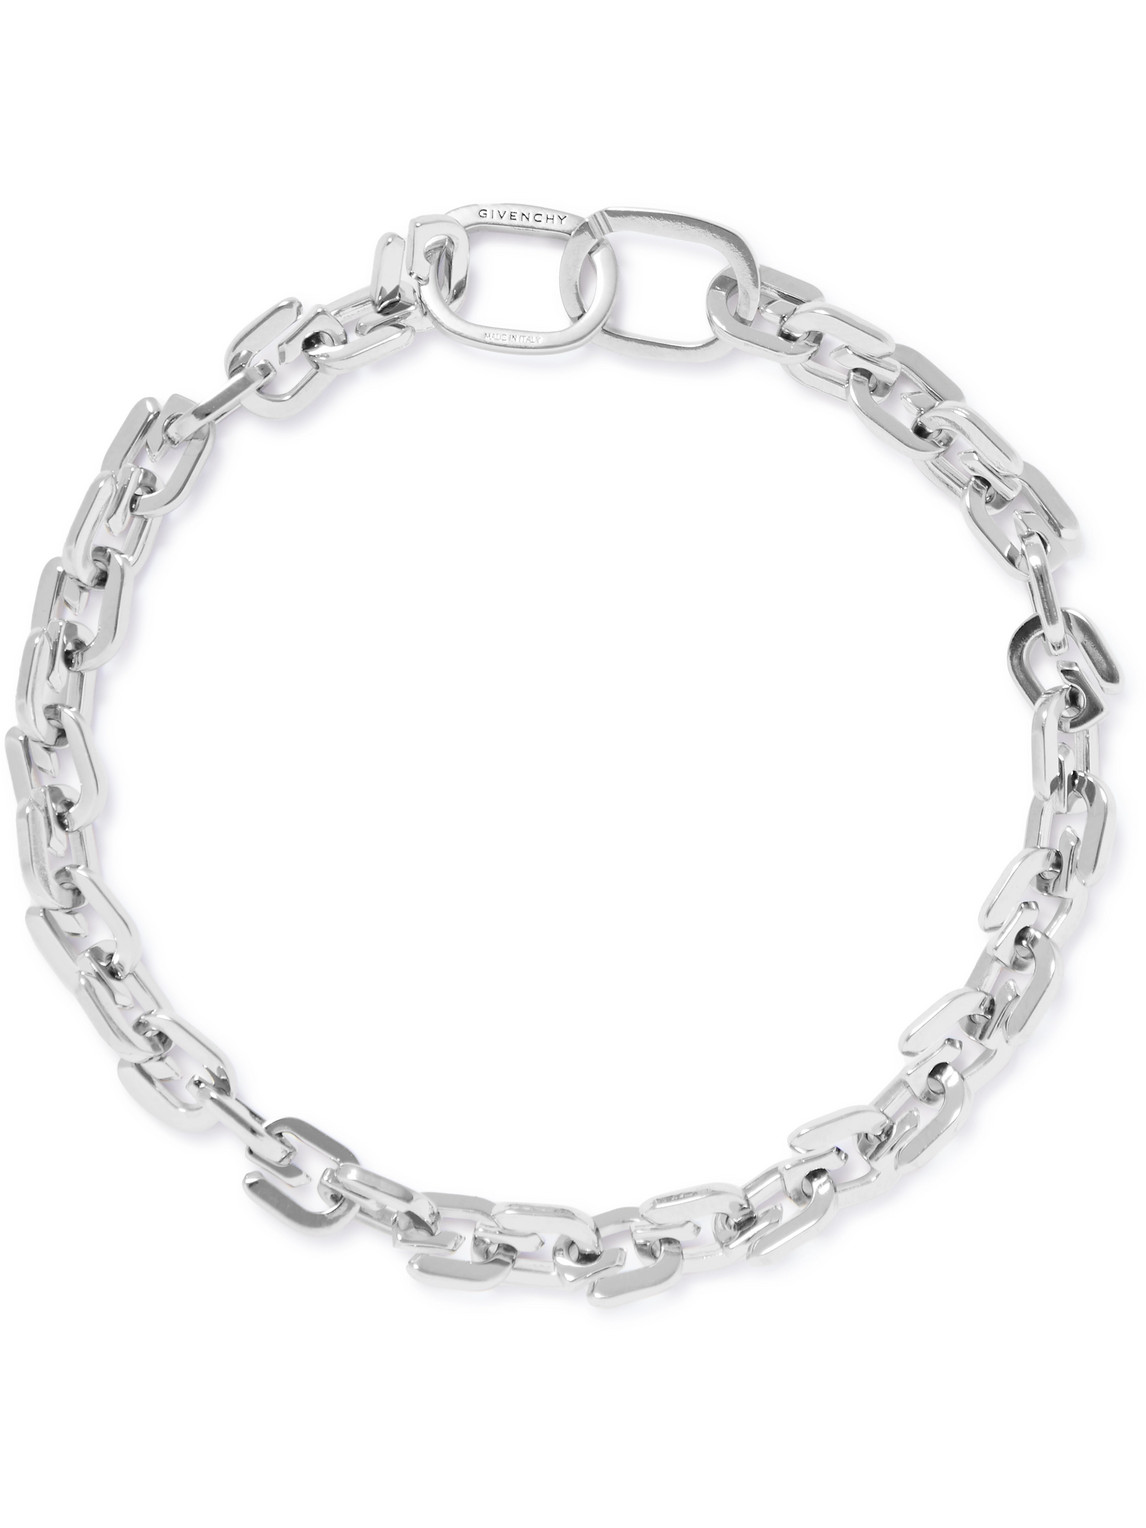 Givenchy Silver-Tone Bracelet